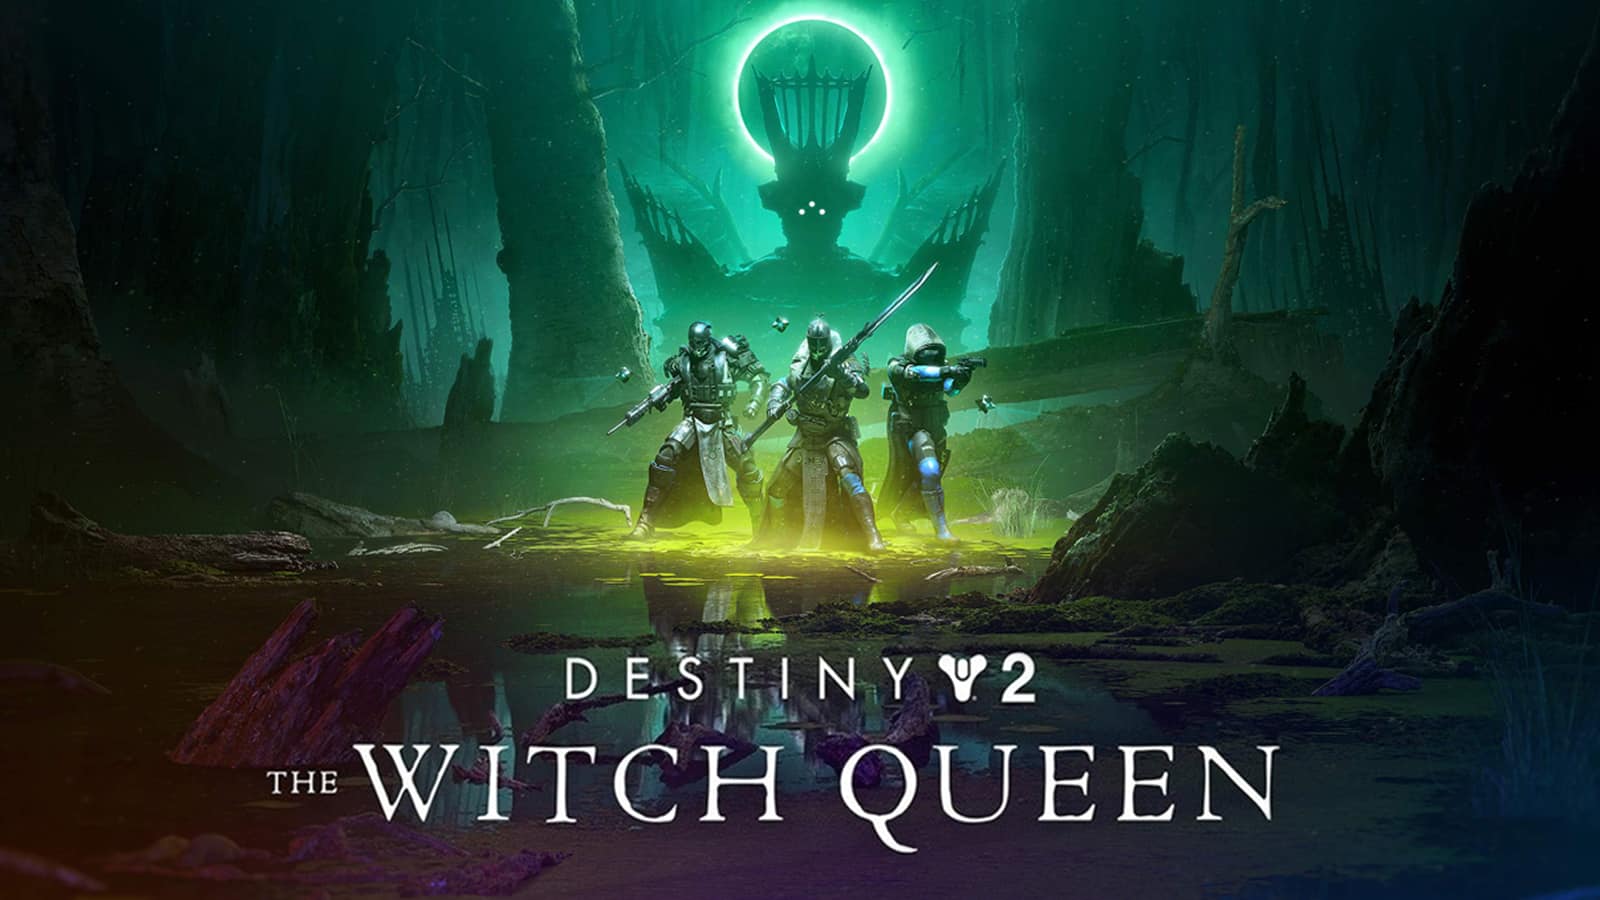 Destiny 2 The Witch Queen Expansion Datum vydání vydání Savathon Story Trailer Uniká více